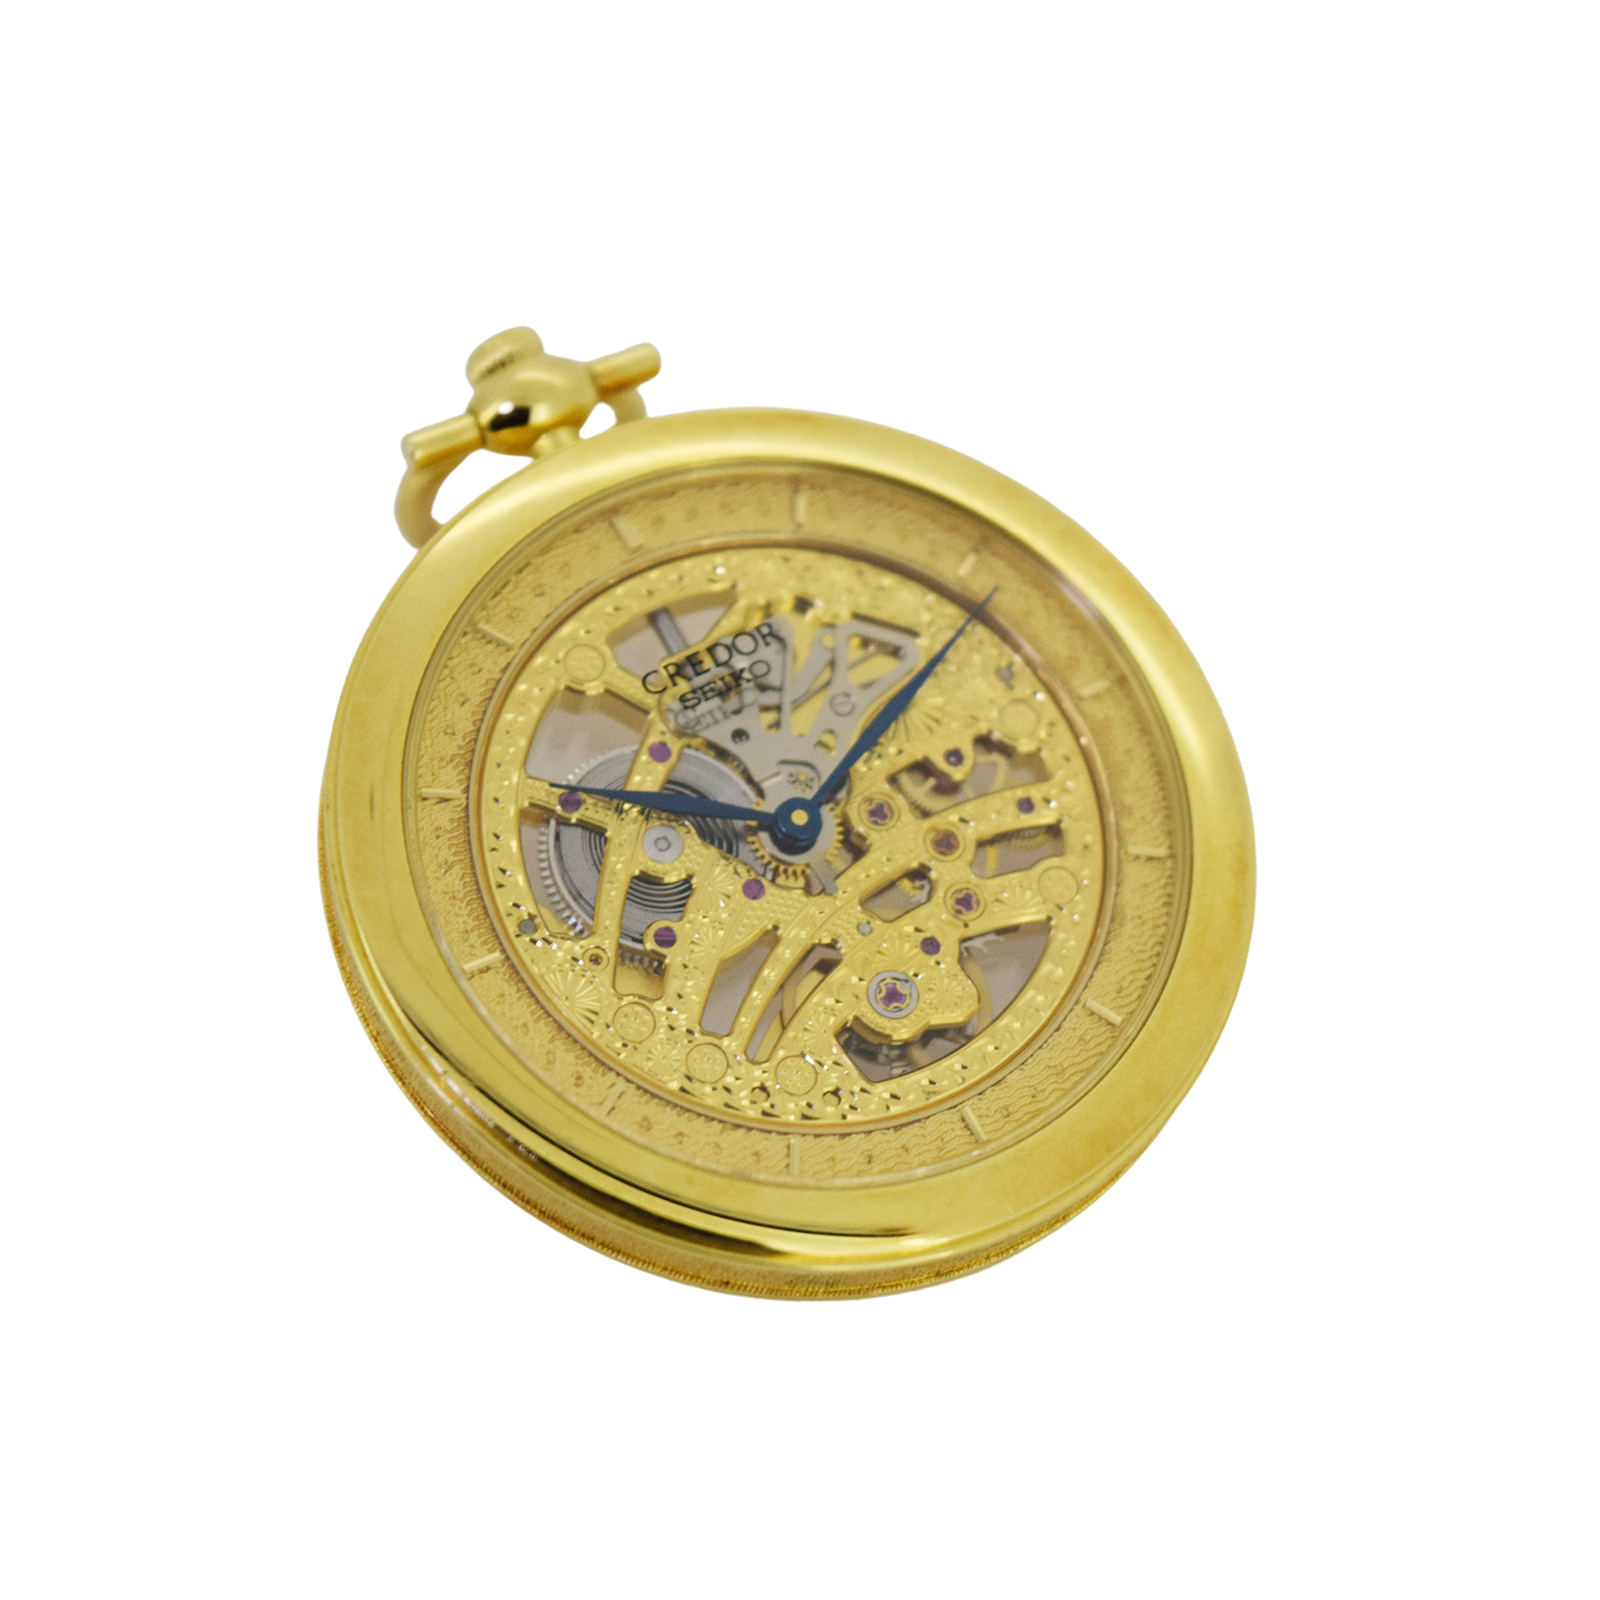 YG製 セイコー クレドール 懐中時計 手巻 6899A｜中古ブランド品、時計 